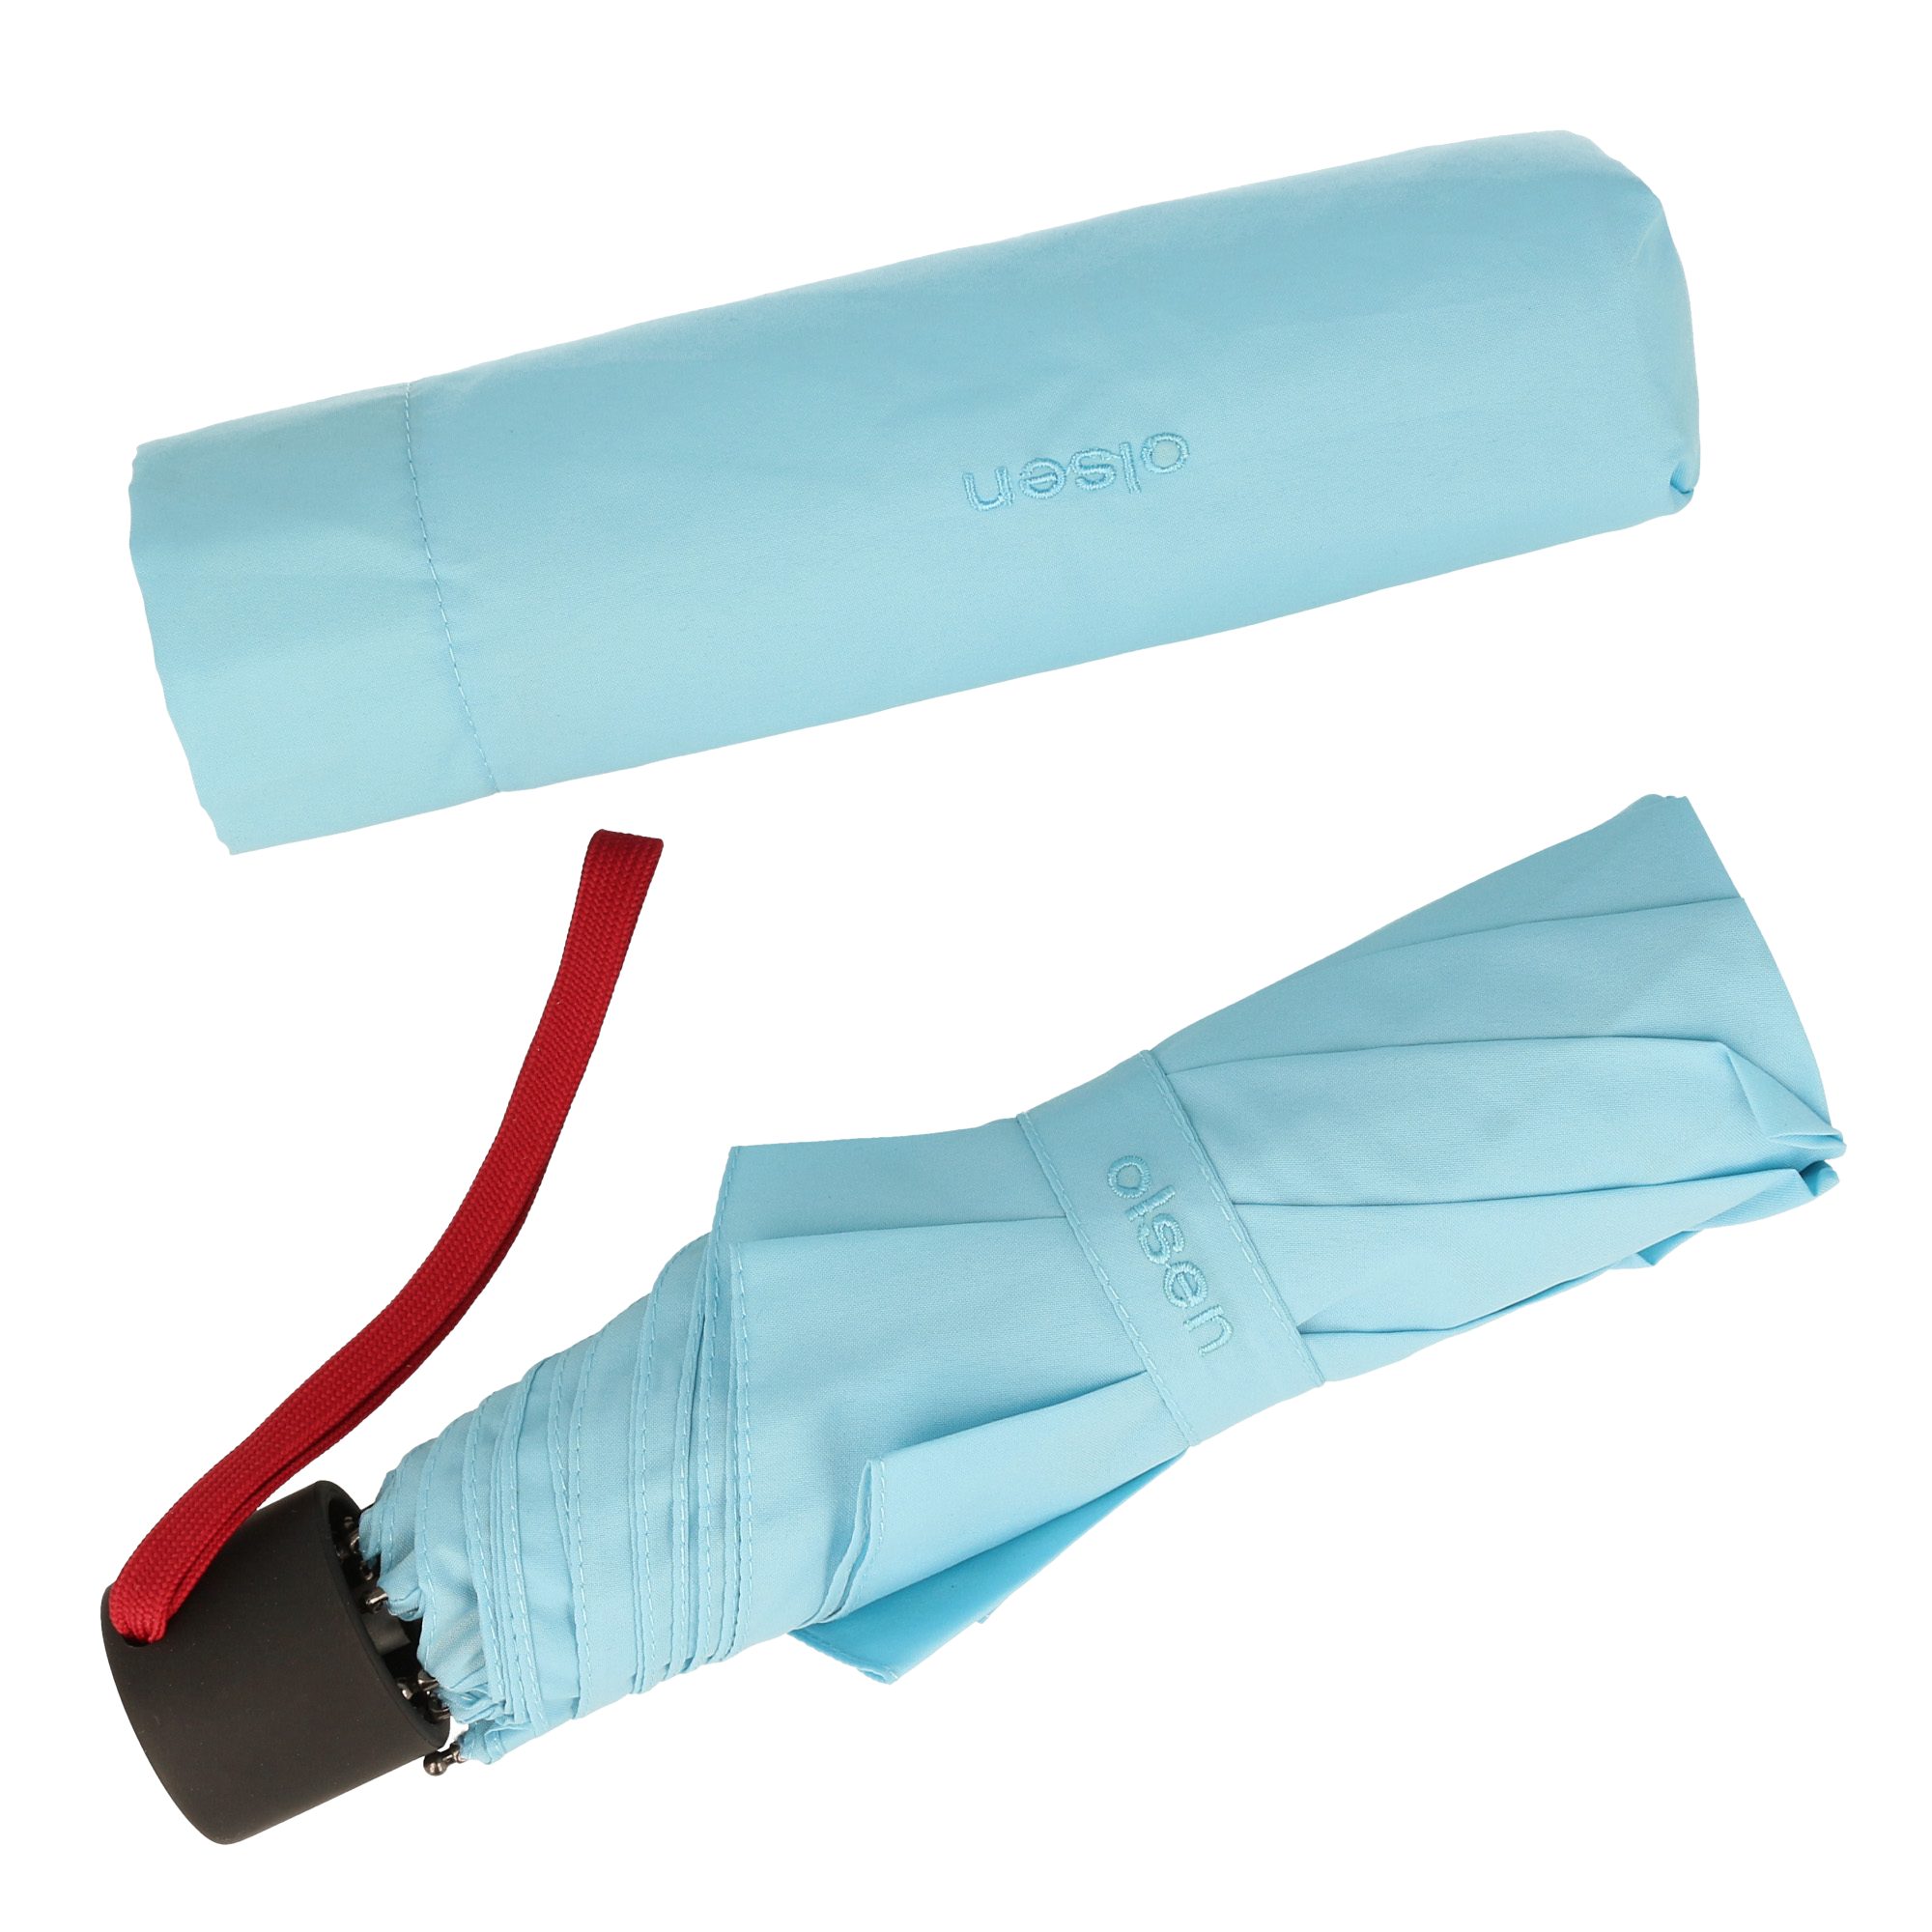 Olsen Taschenregenschirm Kleiner Regenschirm für die Handtasche, in fröhlichen Farben Hellblau